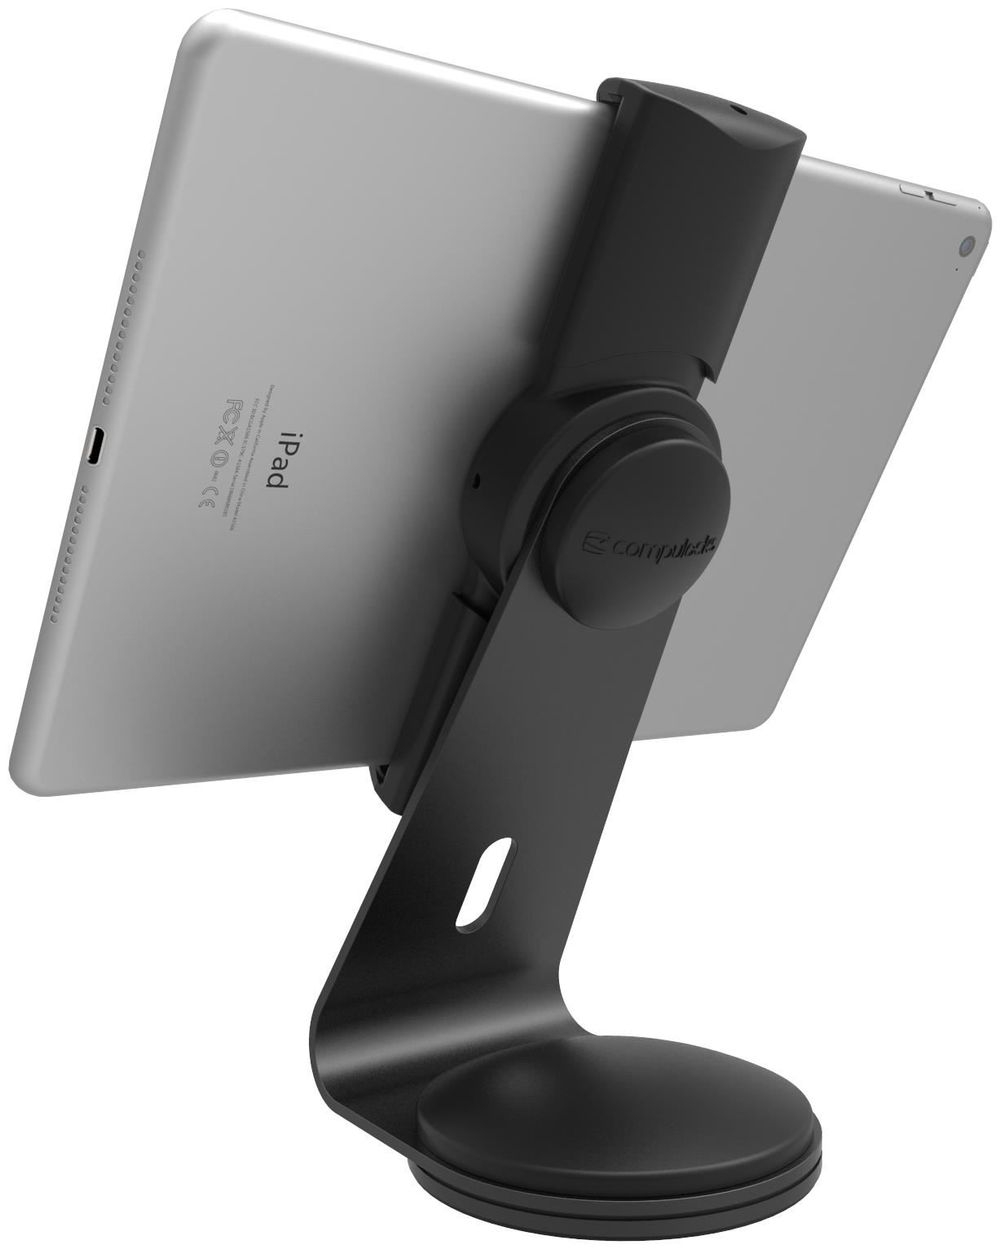 Compulocks Cling Stand Universal Tablet Top Kiosk Bildschirmgröße: bis zu 33 cm (bis zu 13 Zoll) schwarz